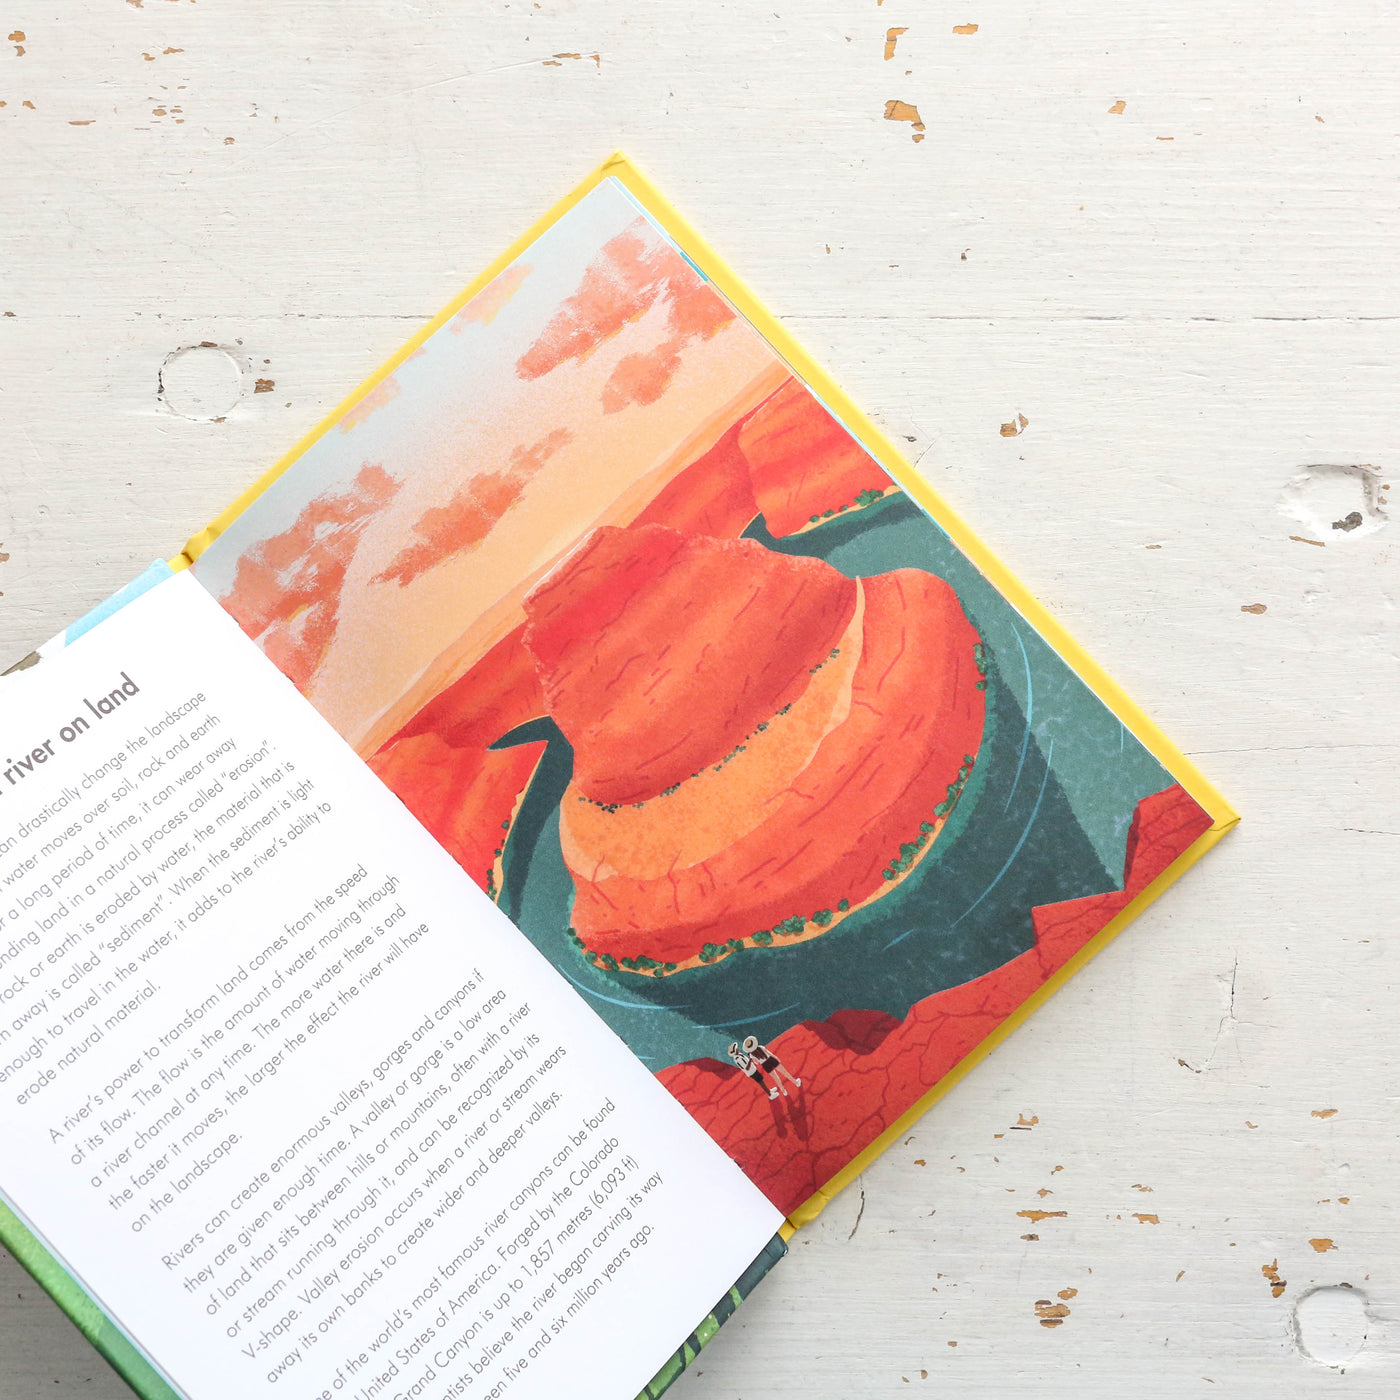 Rivers - A Ladybird Book